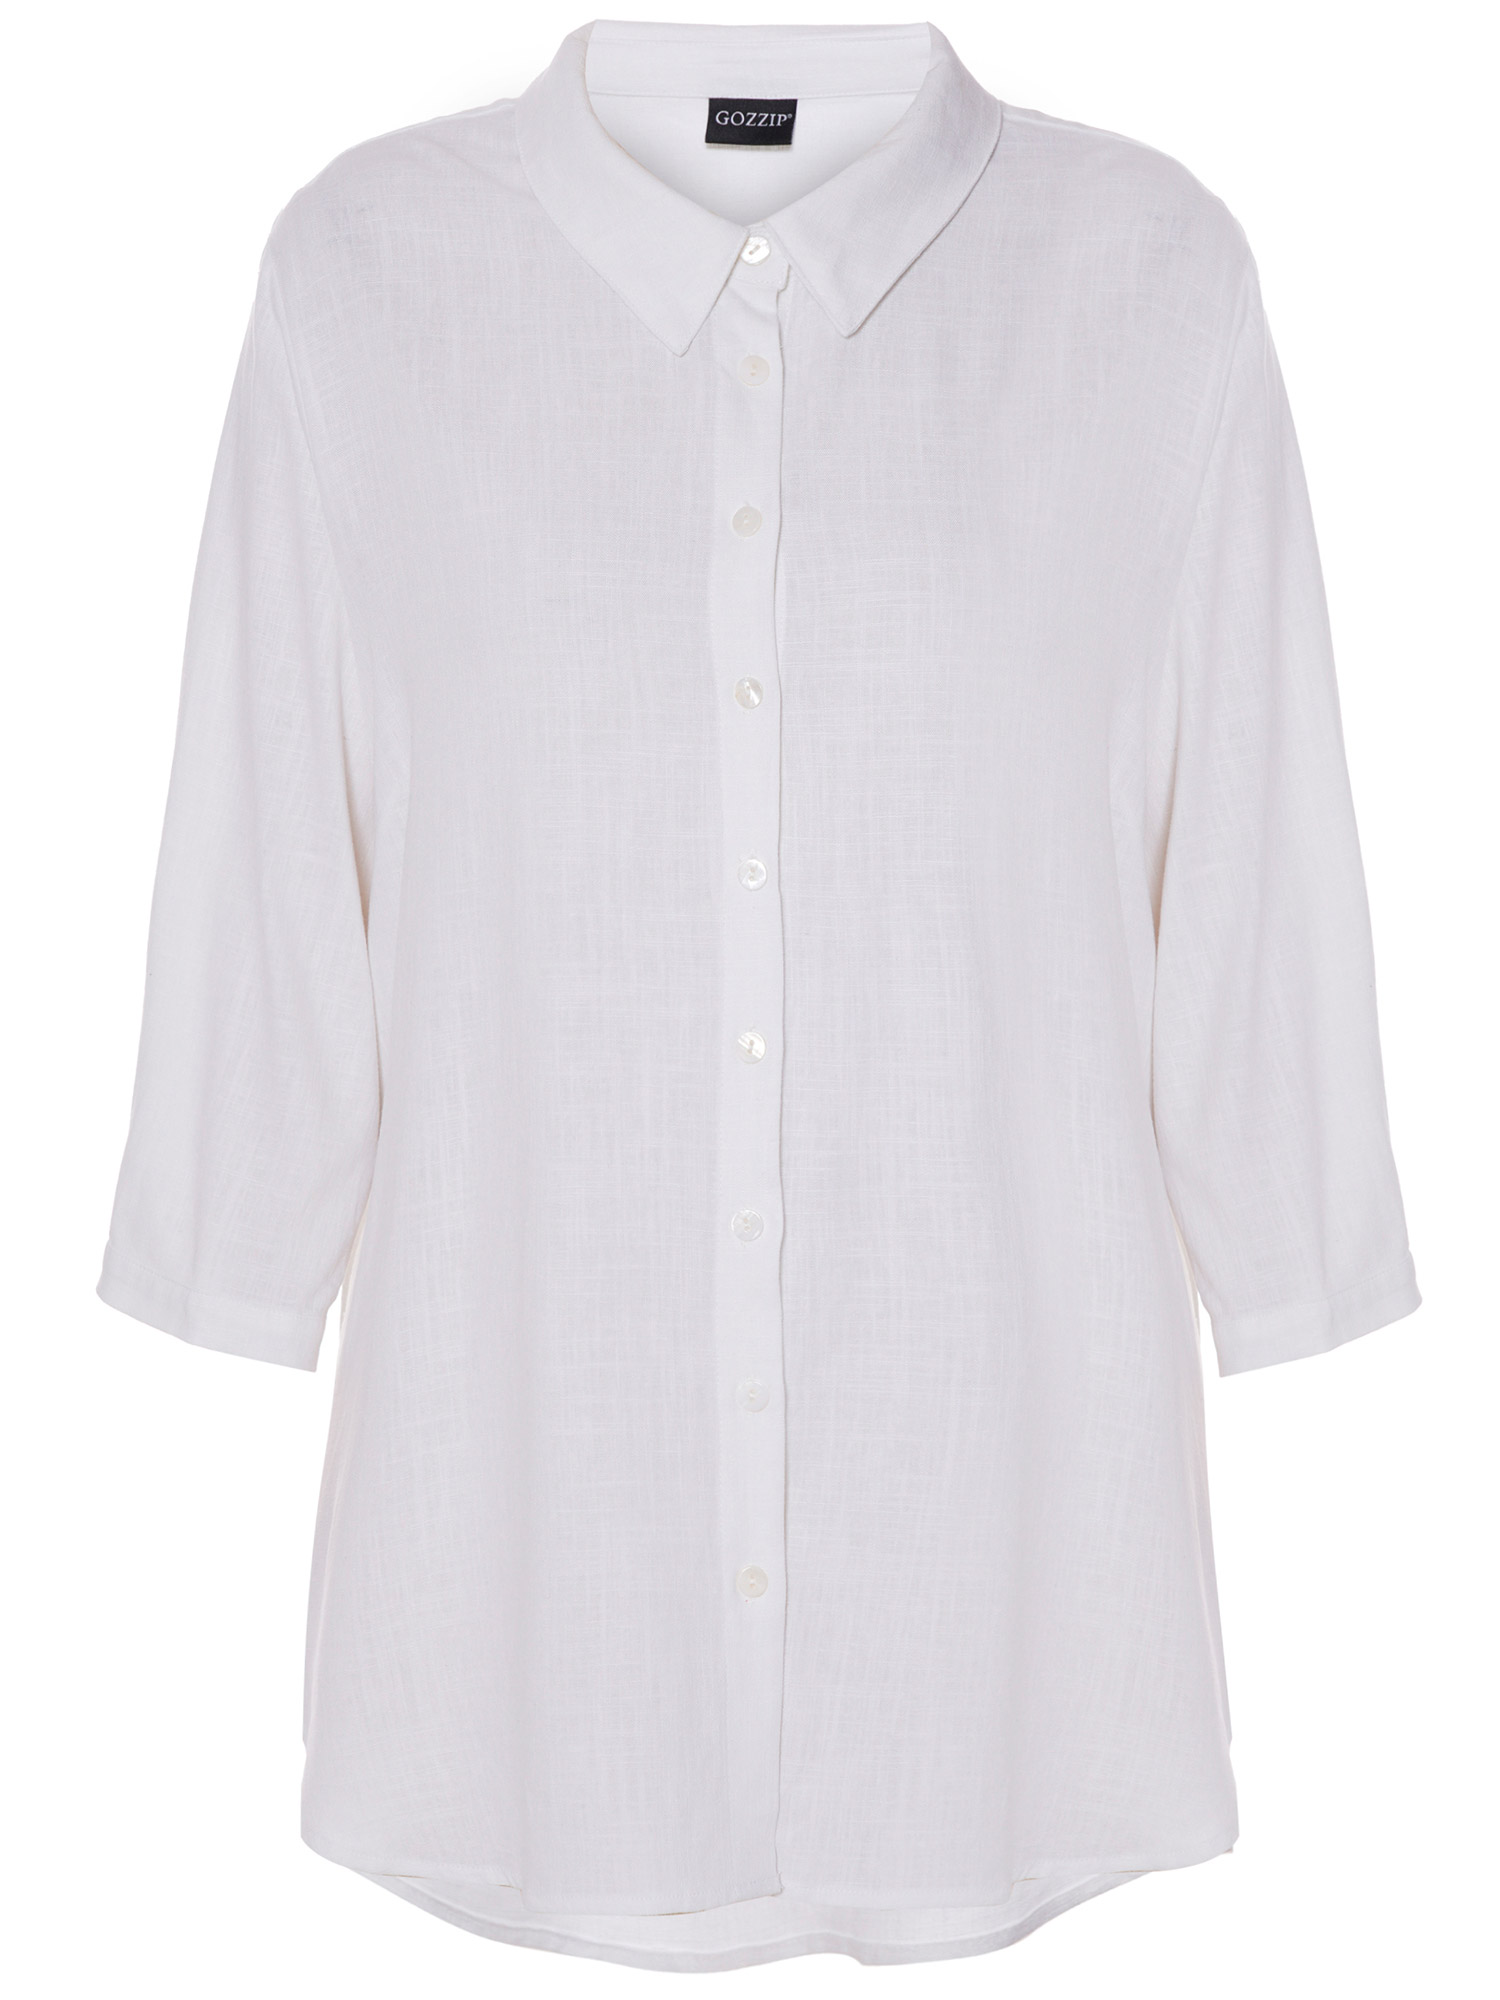 Karina - Hvid skjorte med 3/4 ærme fra Gozzip